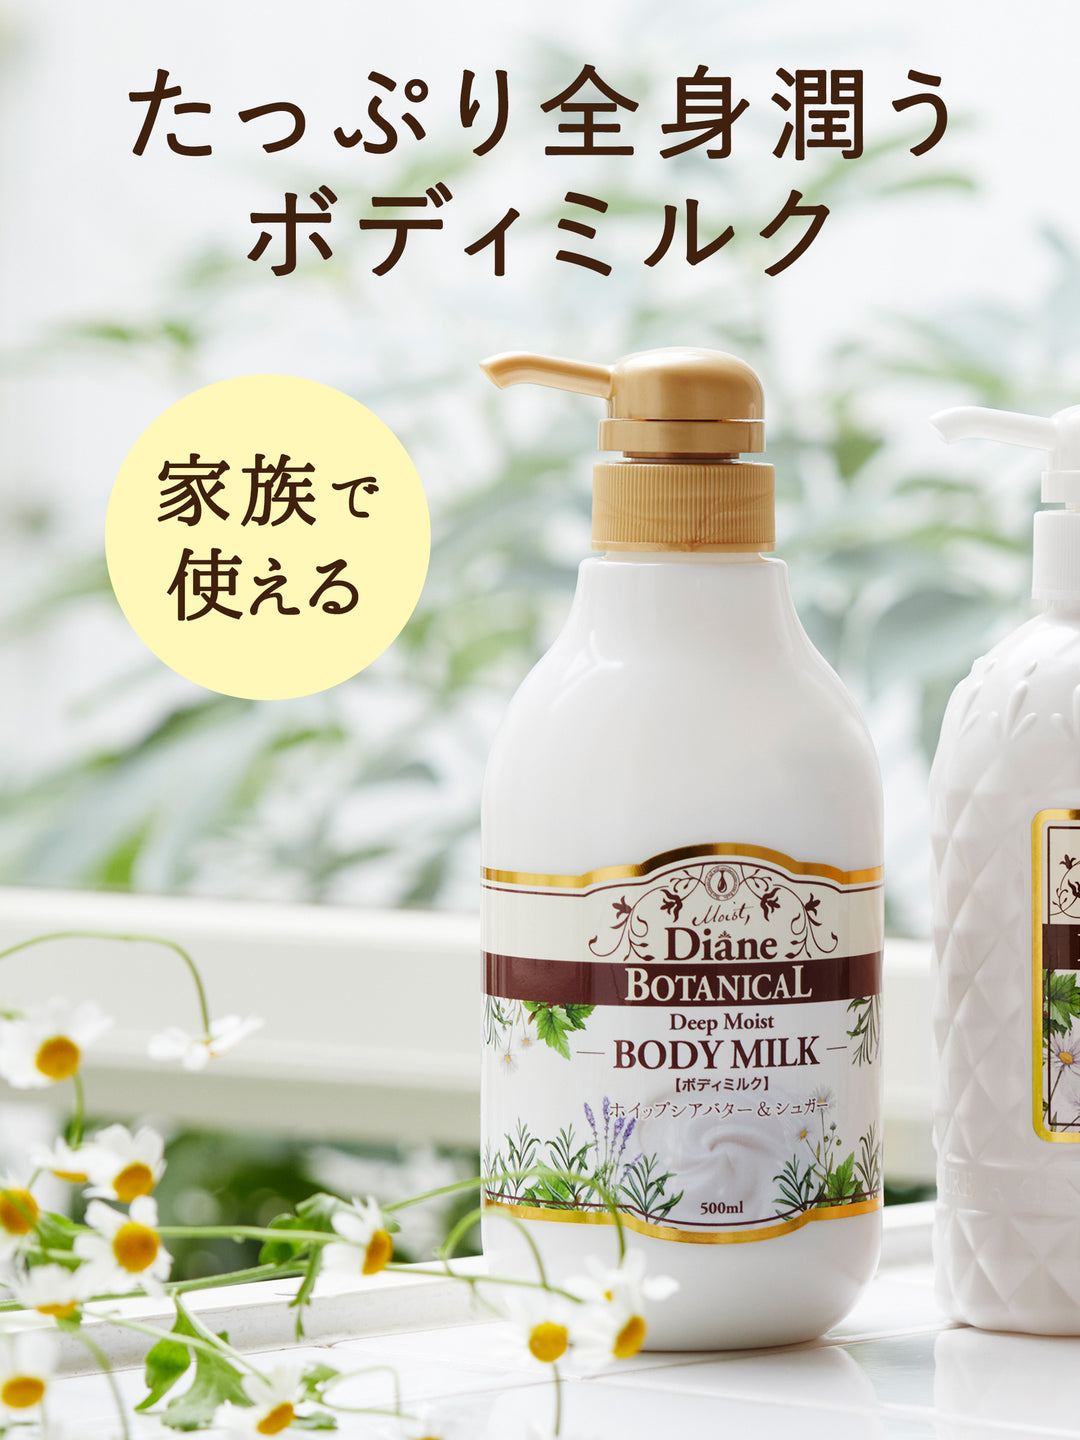 ダイアンボタニカル ボディミルク [ハニーオランジュの香り] ディープモイスト (500ml)